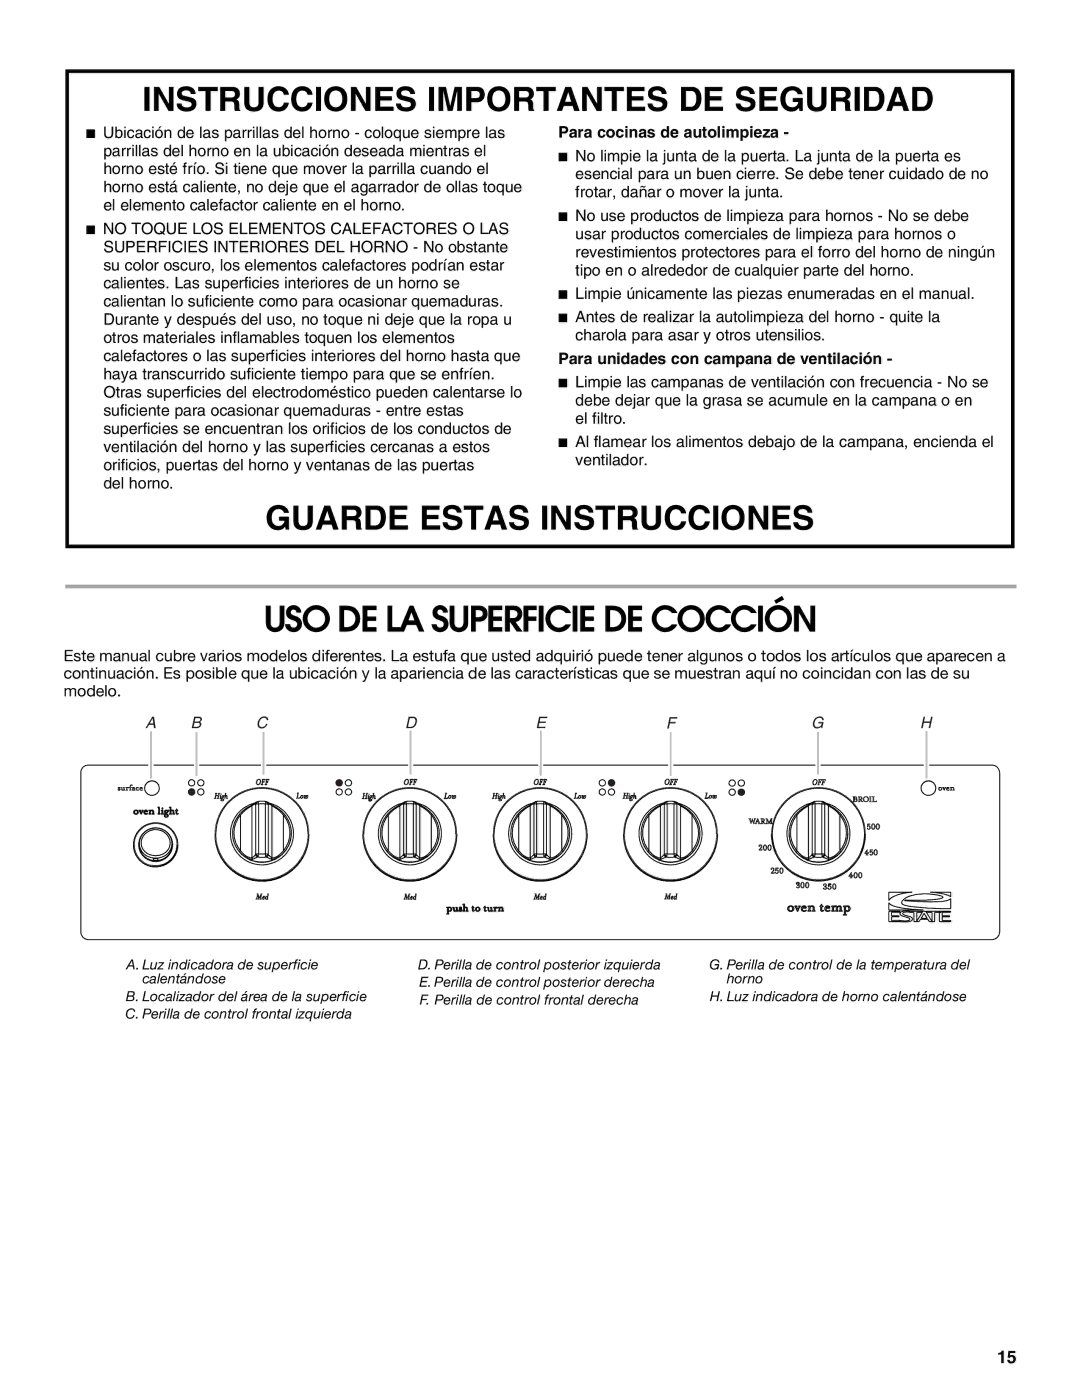 Estate W10175655A manual USO DE LA Superficie DE Cocción, Para cocinas de autolimpieza 